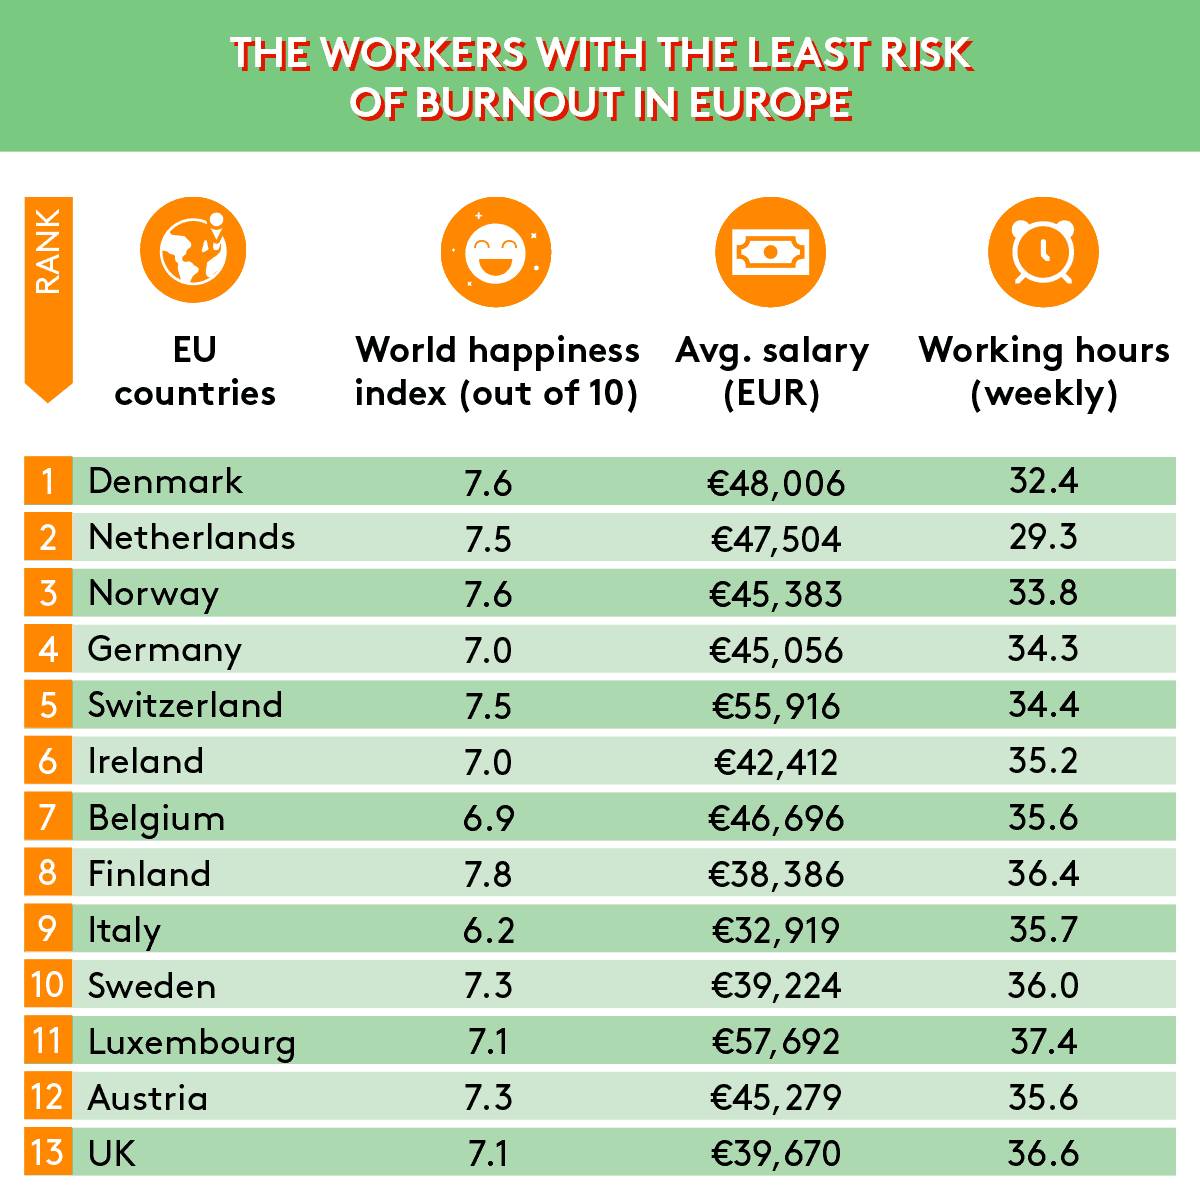 La Norvège a le 3ème plus faible risque d'épuisement professionnel en Europe, selon une étude de presse - 9